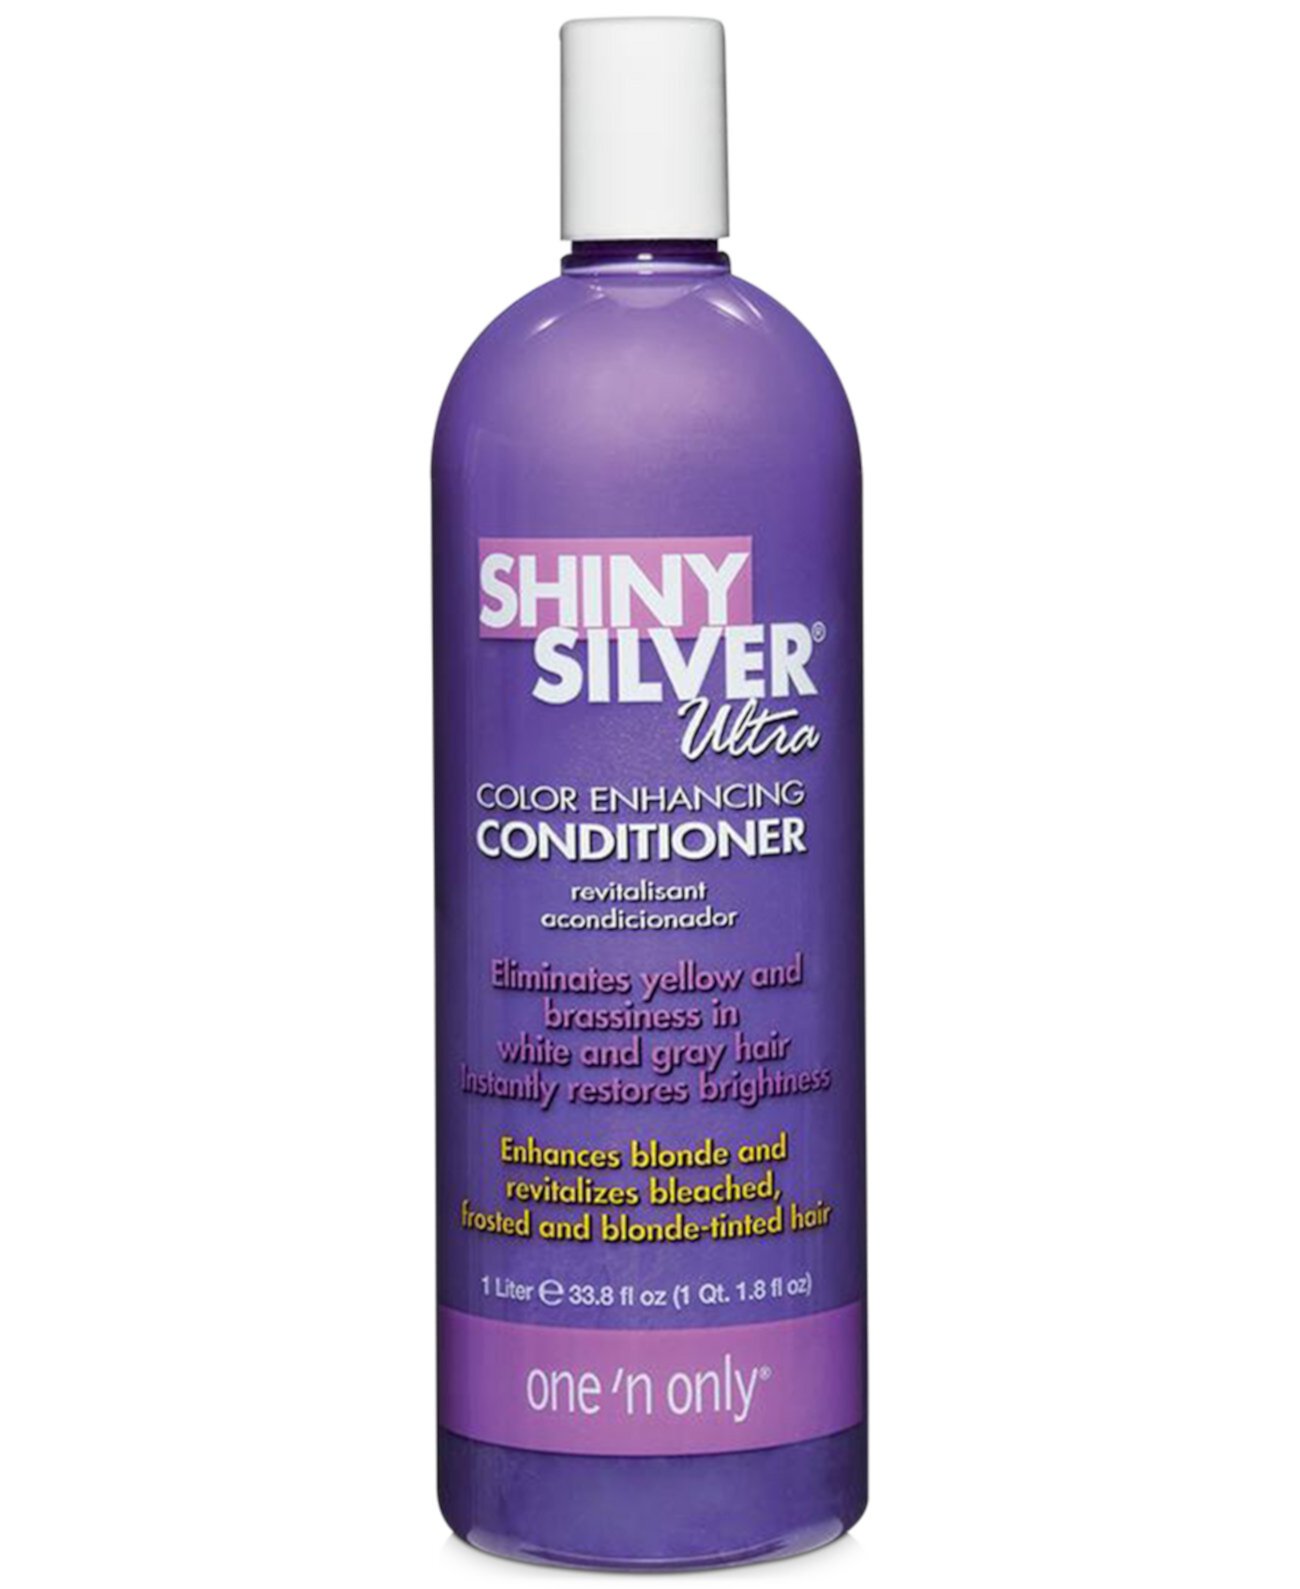 Кондиционер для улучшения цвета Shiny Silver Ultra, 33,8 унции, от PUREBEAUTY Salon & Spa One n' Only